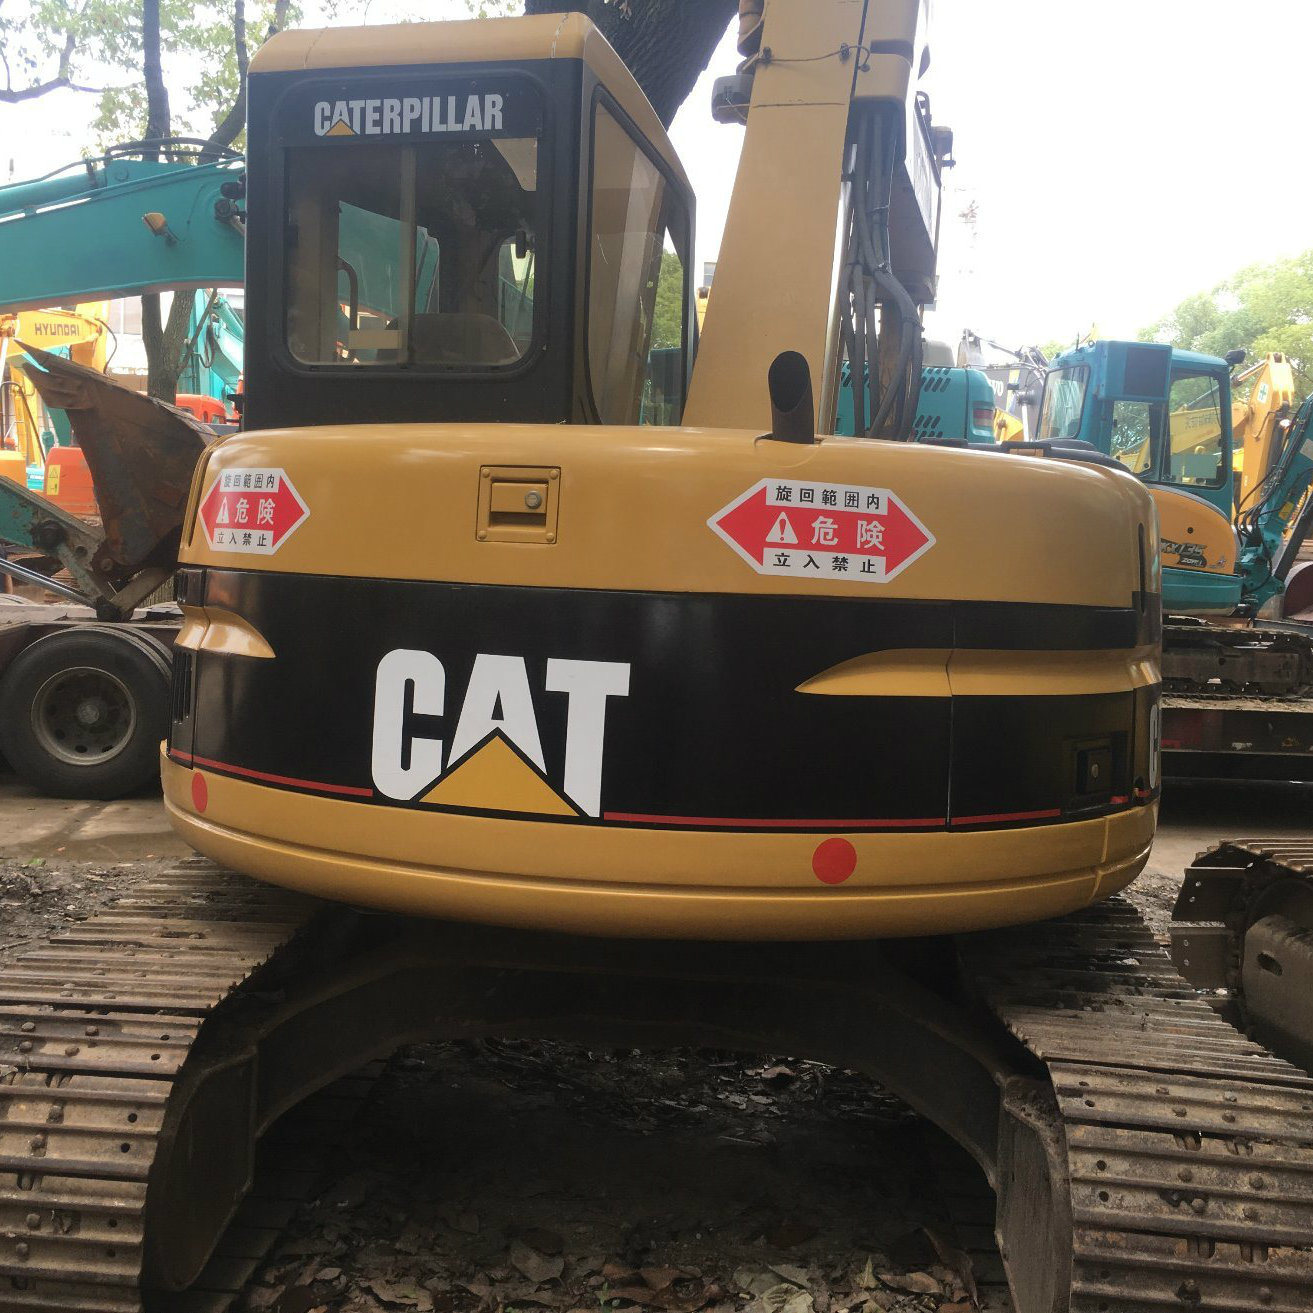 Used Cat 308 Crawler Excavator Caterpillar in Good Quality